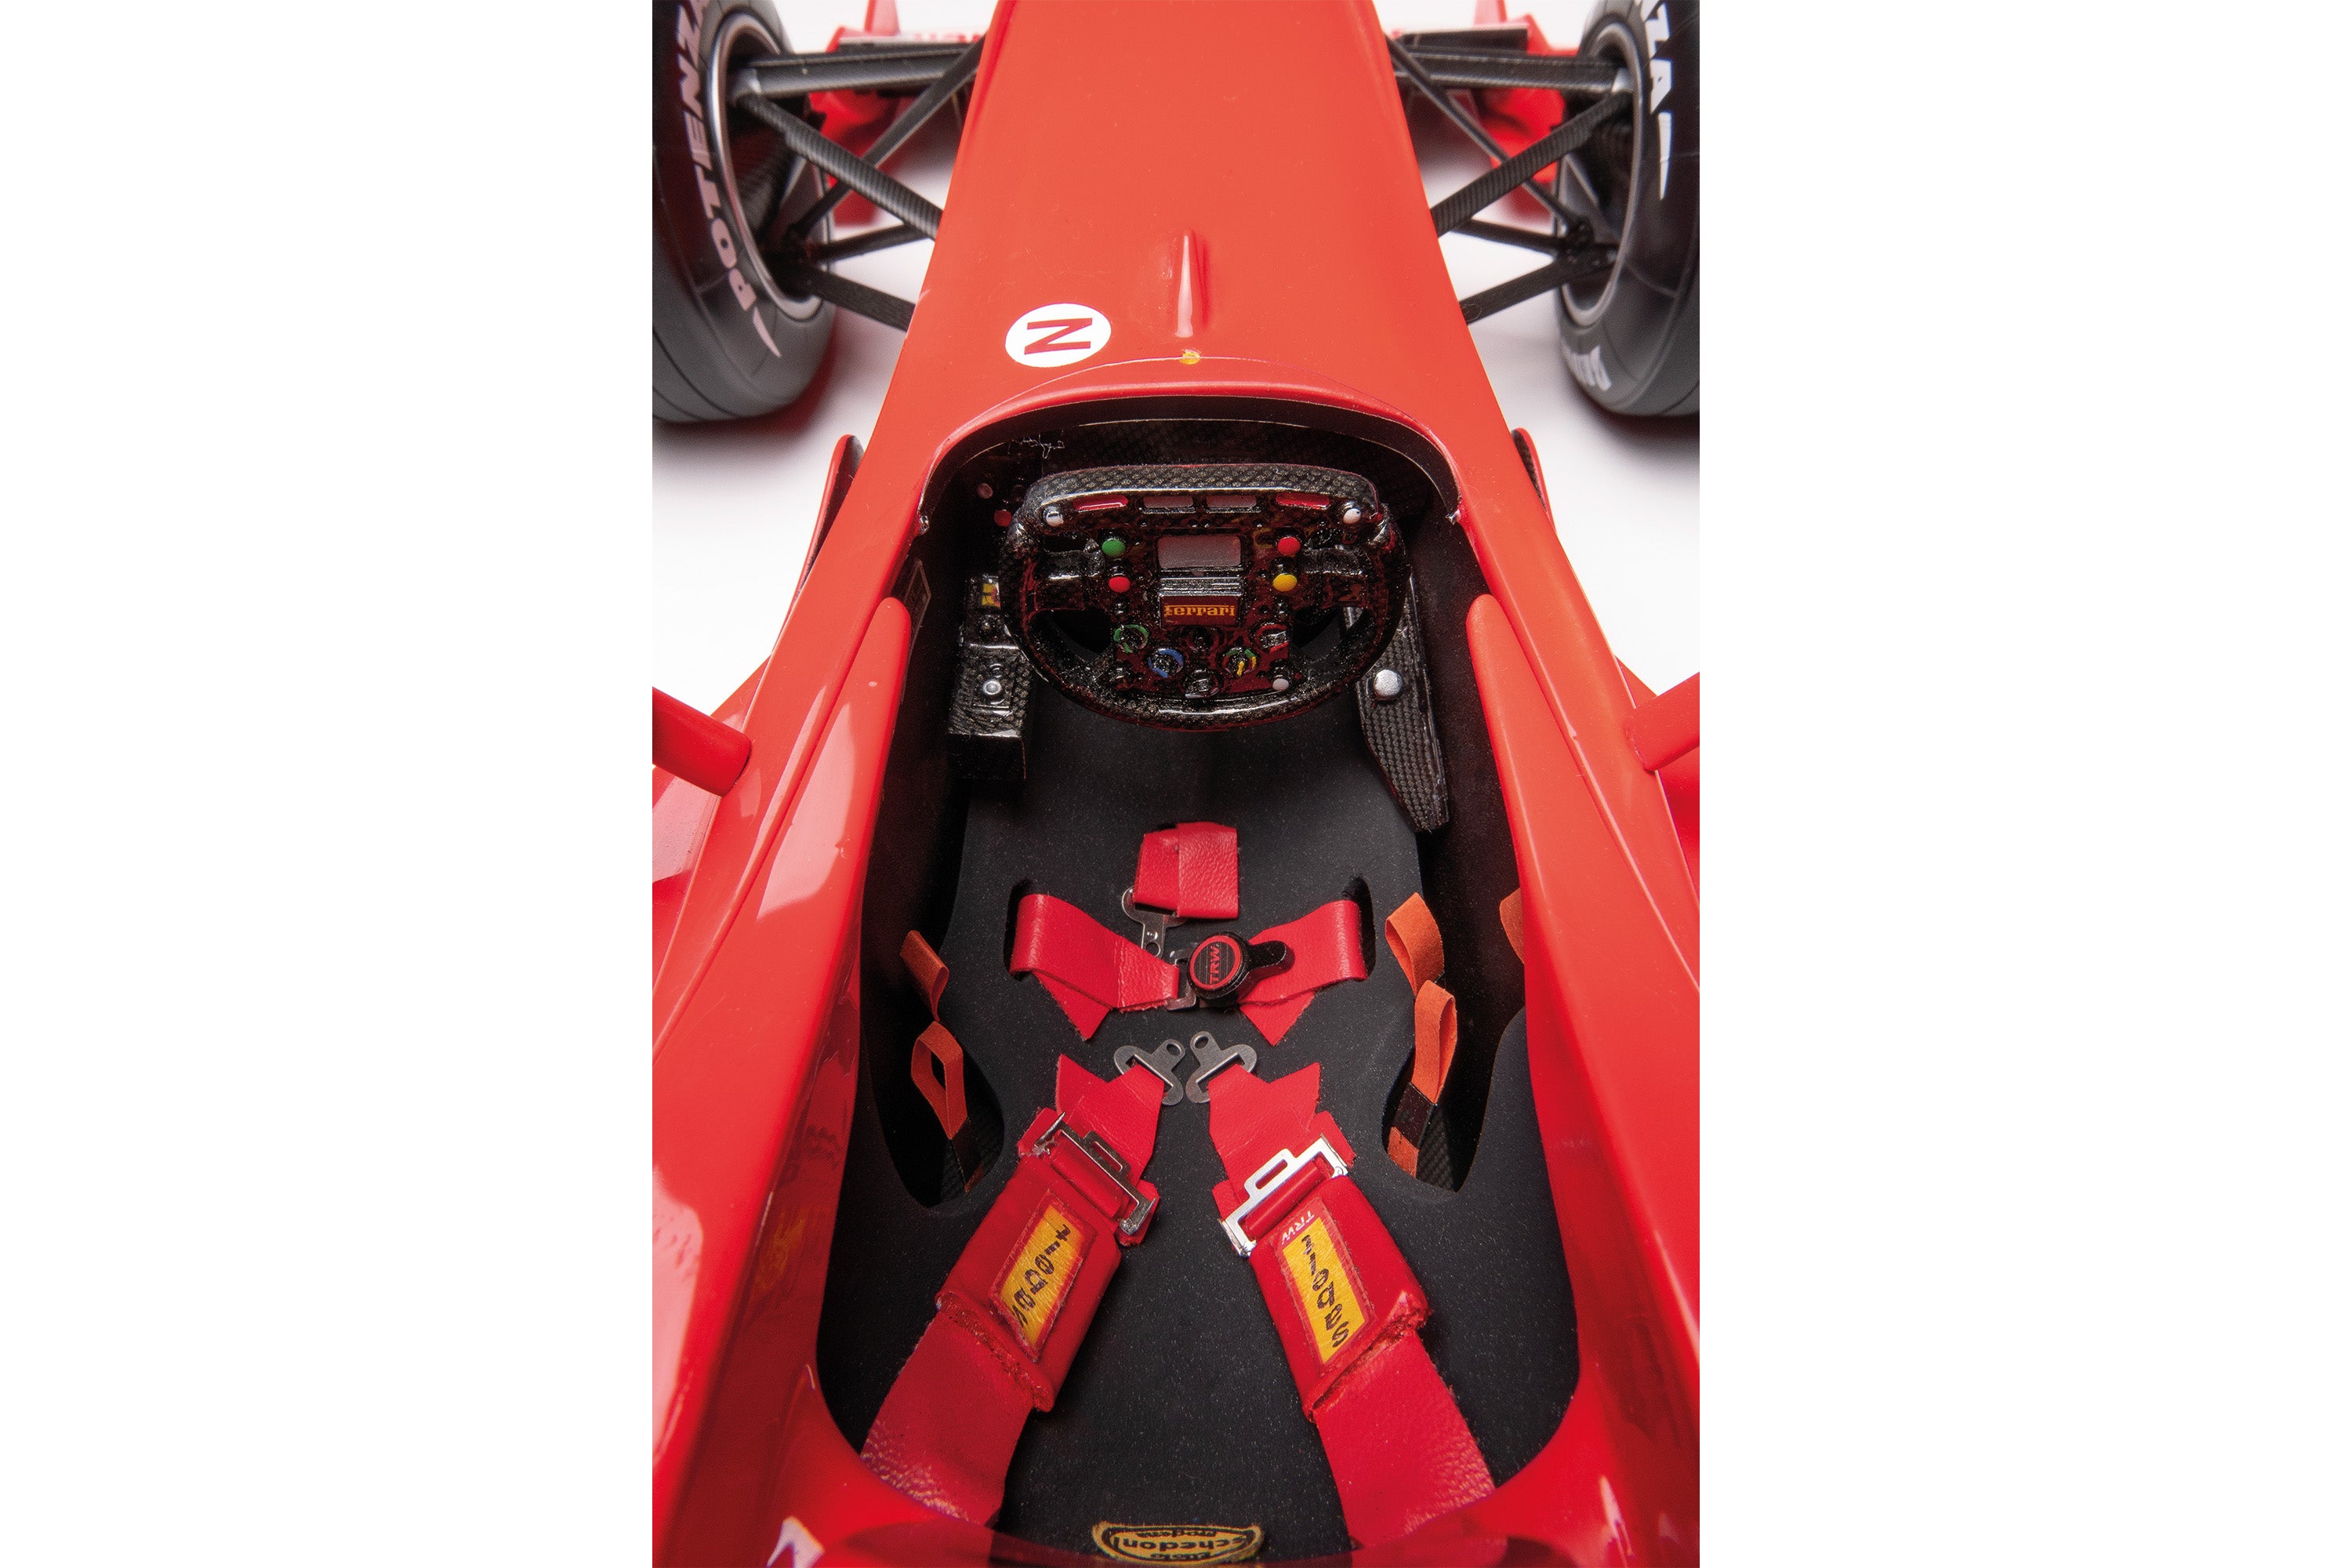 フェラーリ F1-2000 - 超詳細版 – Amalgam Collection